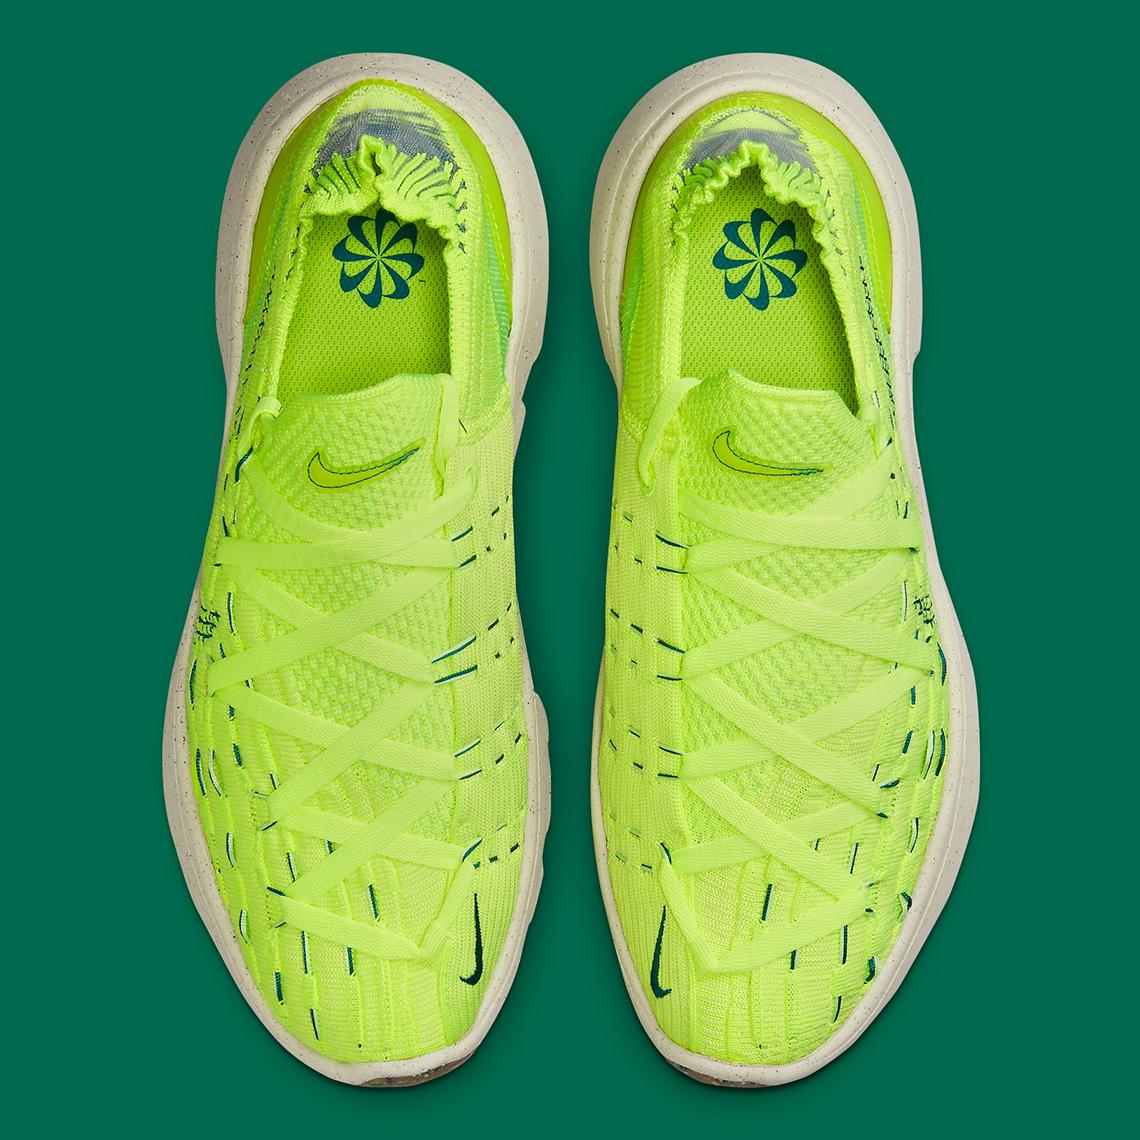 5 รองเท้าผ้าใบ Nike Space Hippie เมื่อขยะอวกาศถูกนำมาใช้เป็นวัสดุบนรองเท้า10